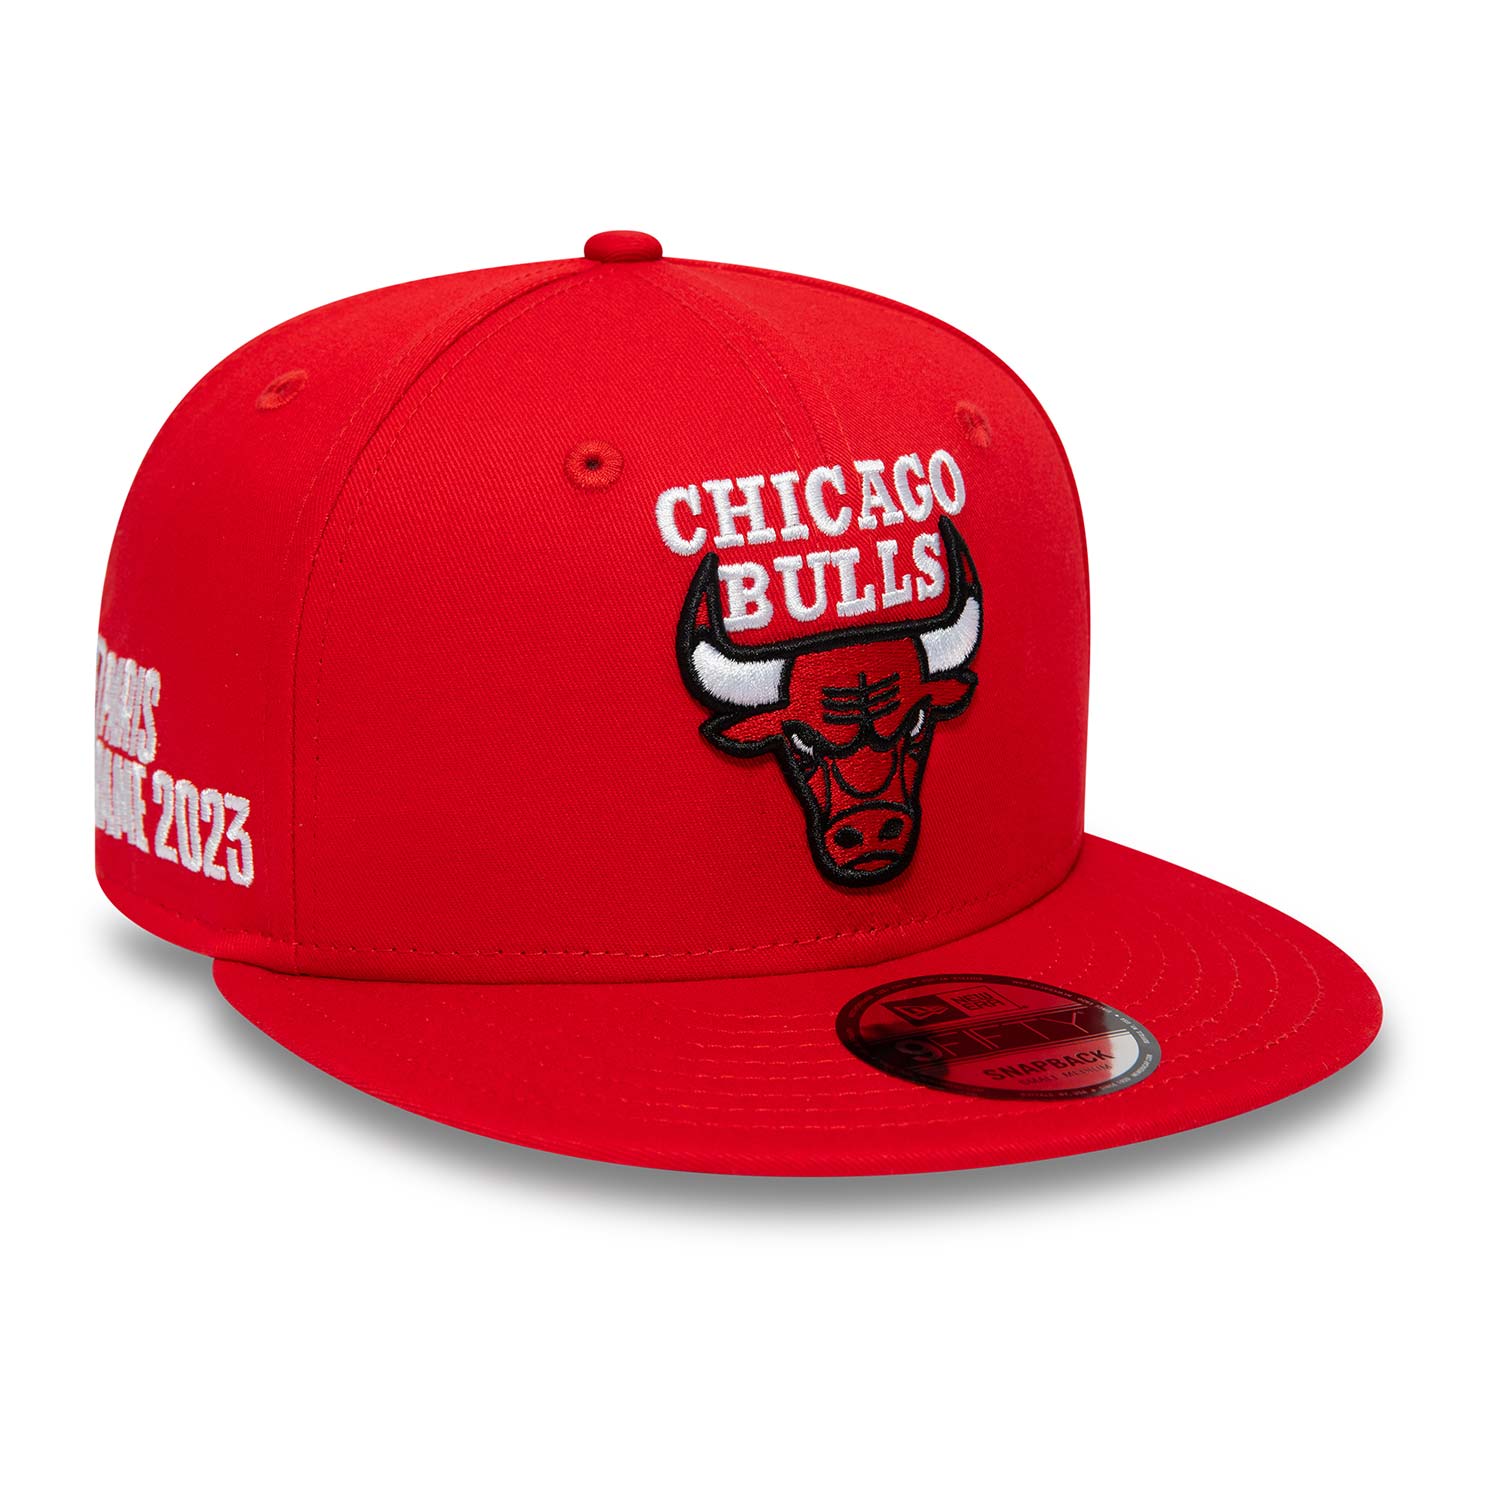 Chicago Bulls NBA Paris Games Red 9FIFTY Snapback Cap